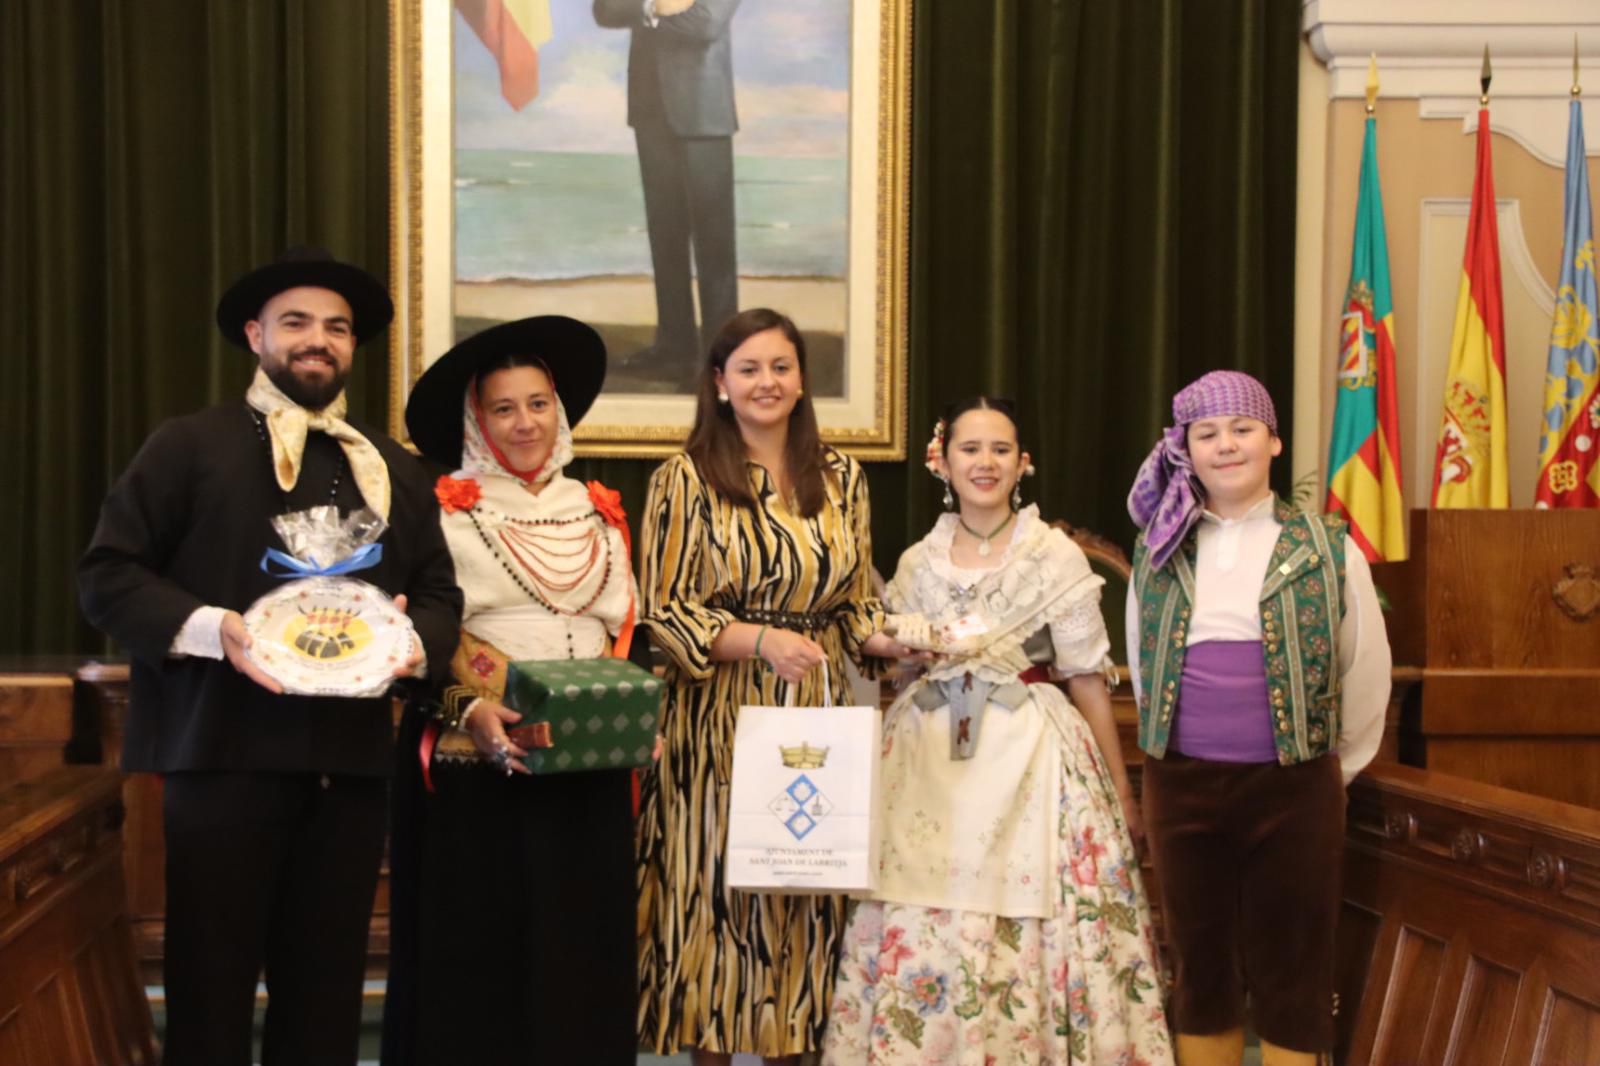 El govern municipal rep als grups participants en el Festival de Danses de l'Antiga Corona d'Aragó com a mostra de suport al folklore i a la música tradicional